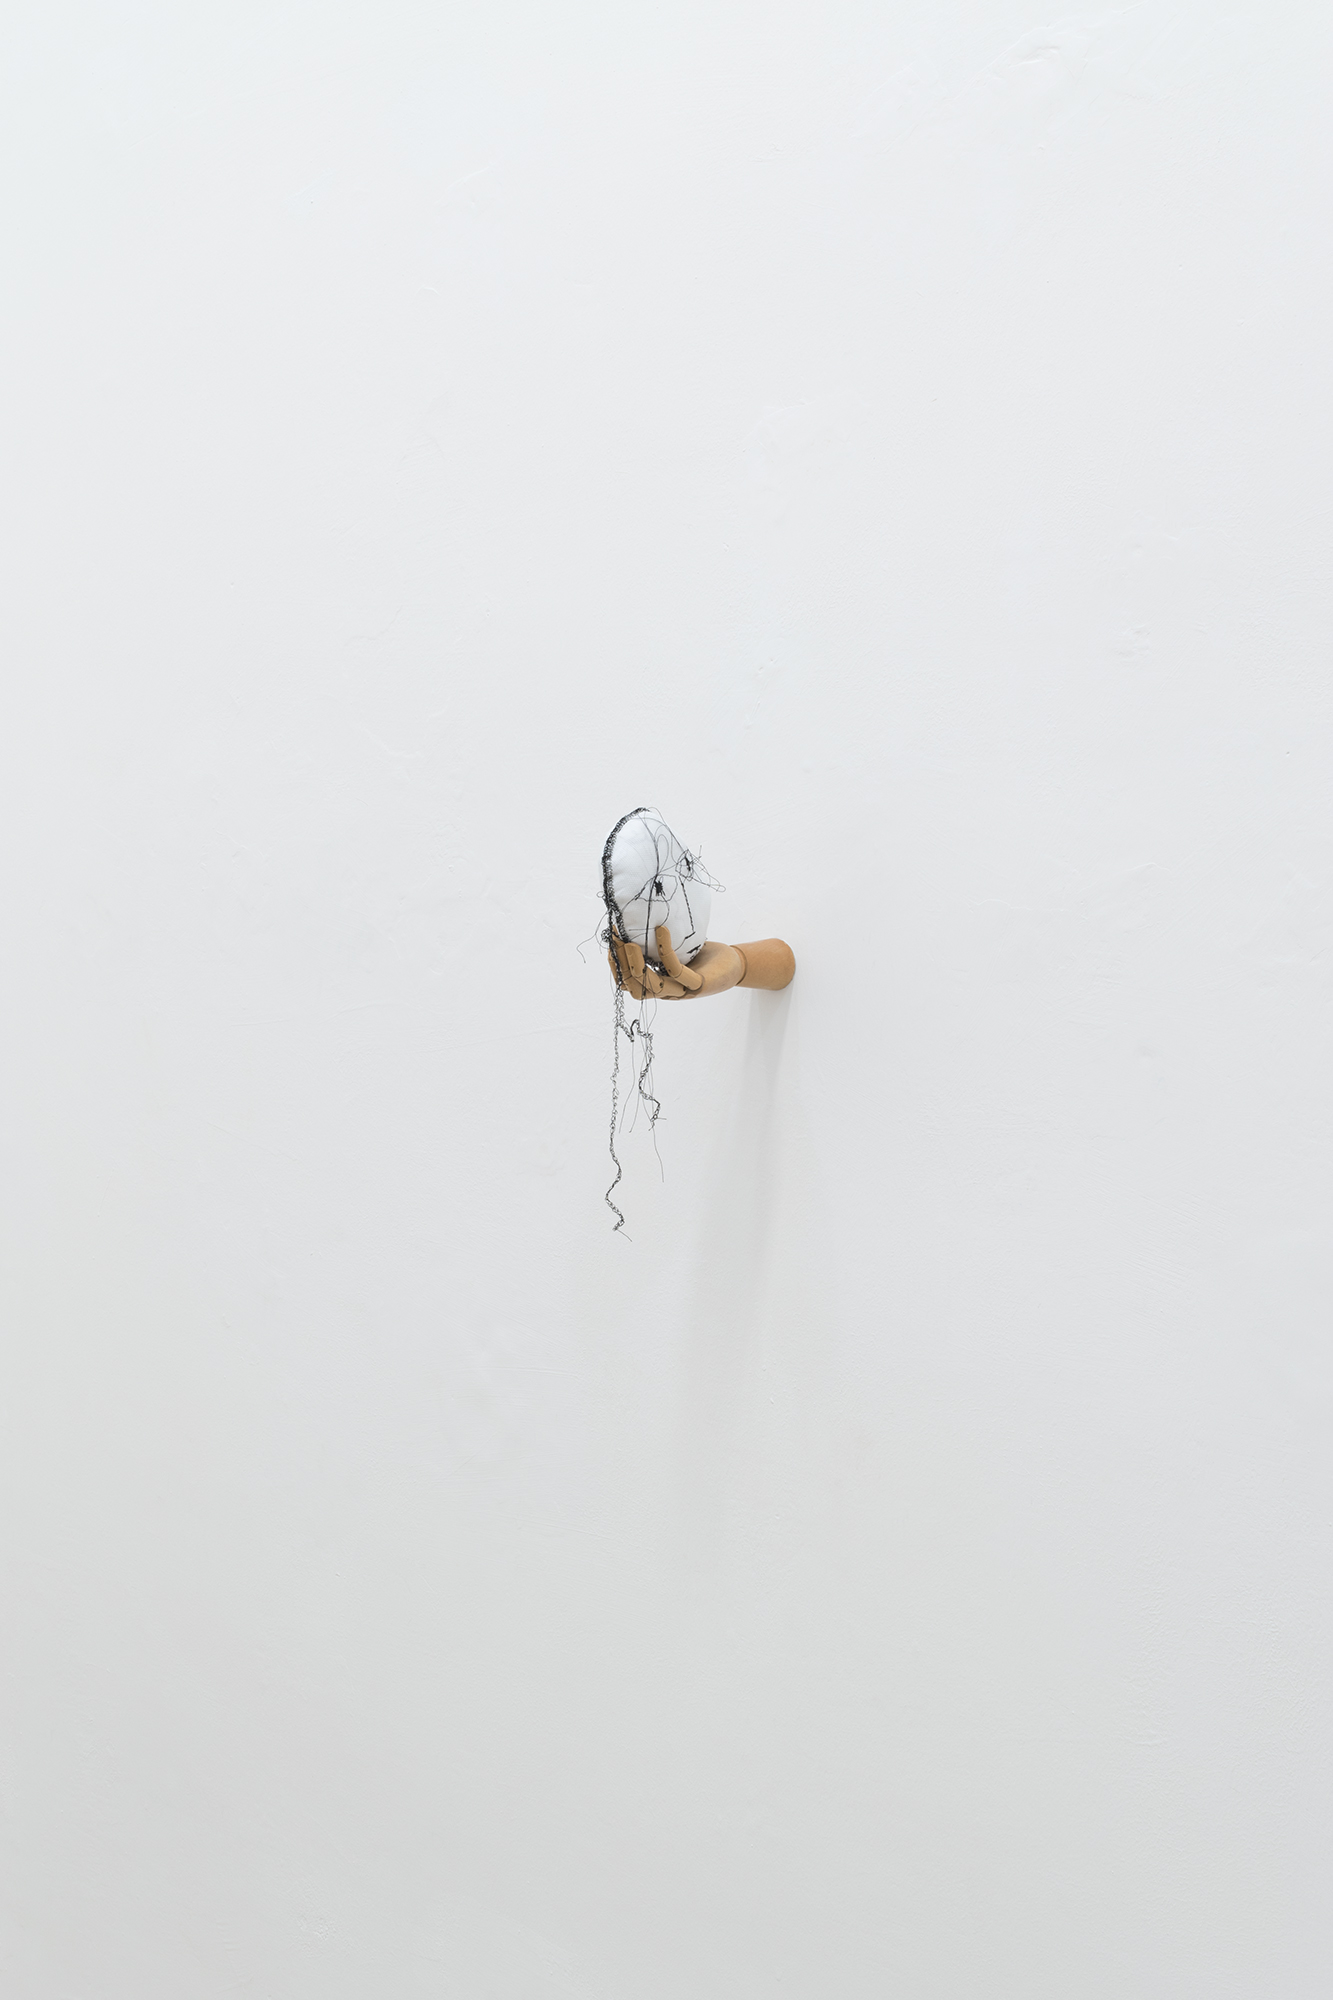 Mariantonietta Bagliato, Mannequeen, 2018, tessuto, imbottitura, manichino in legno a mano, ricamo, 15 x 12 x 24 cm.